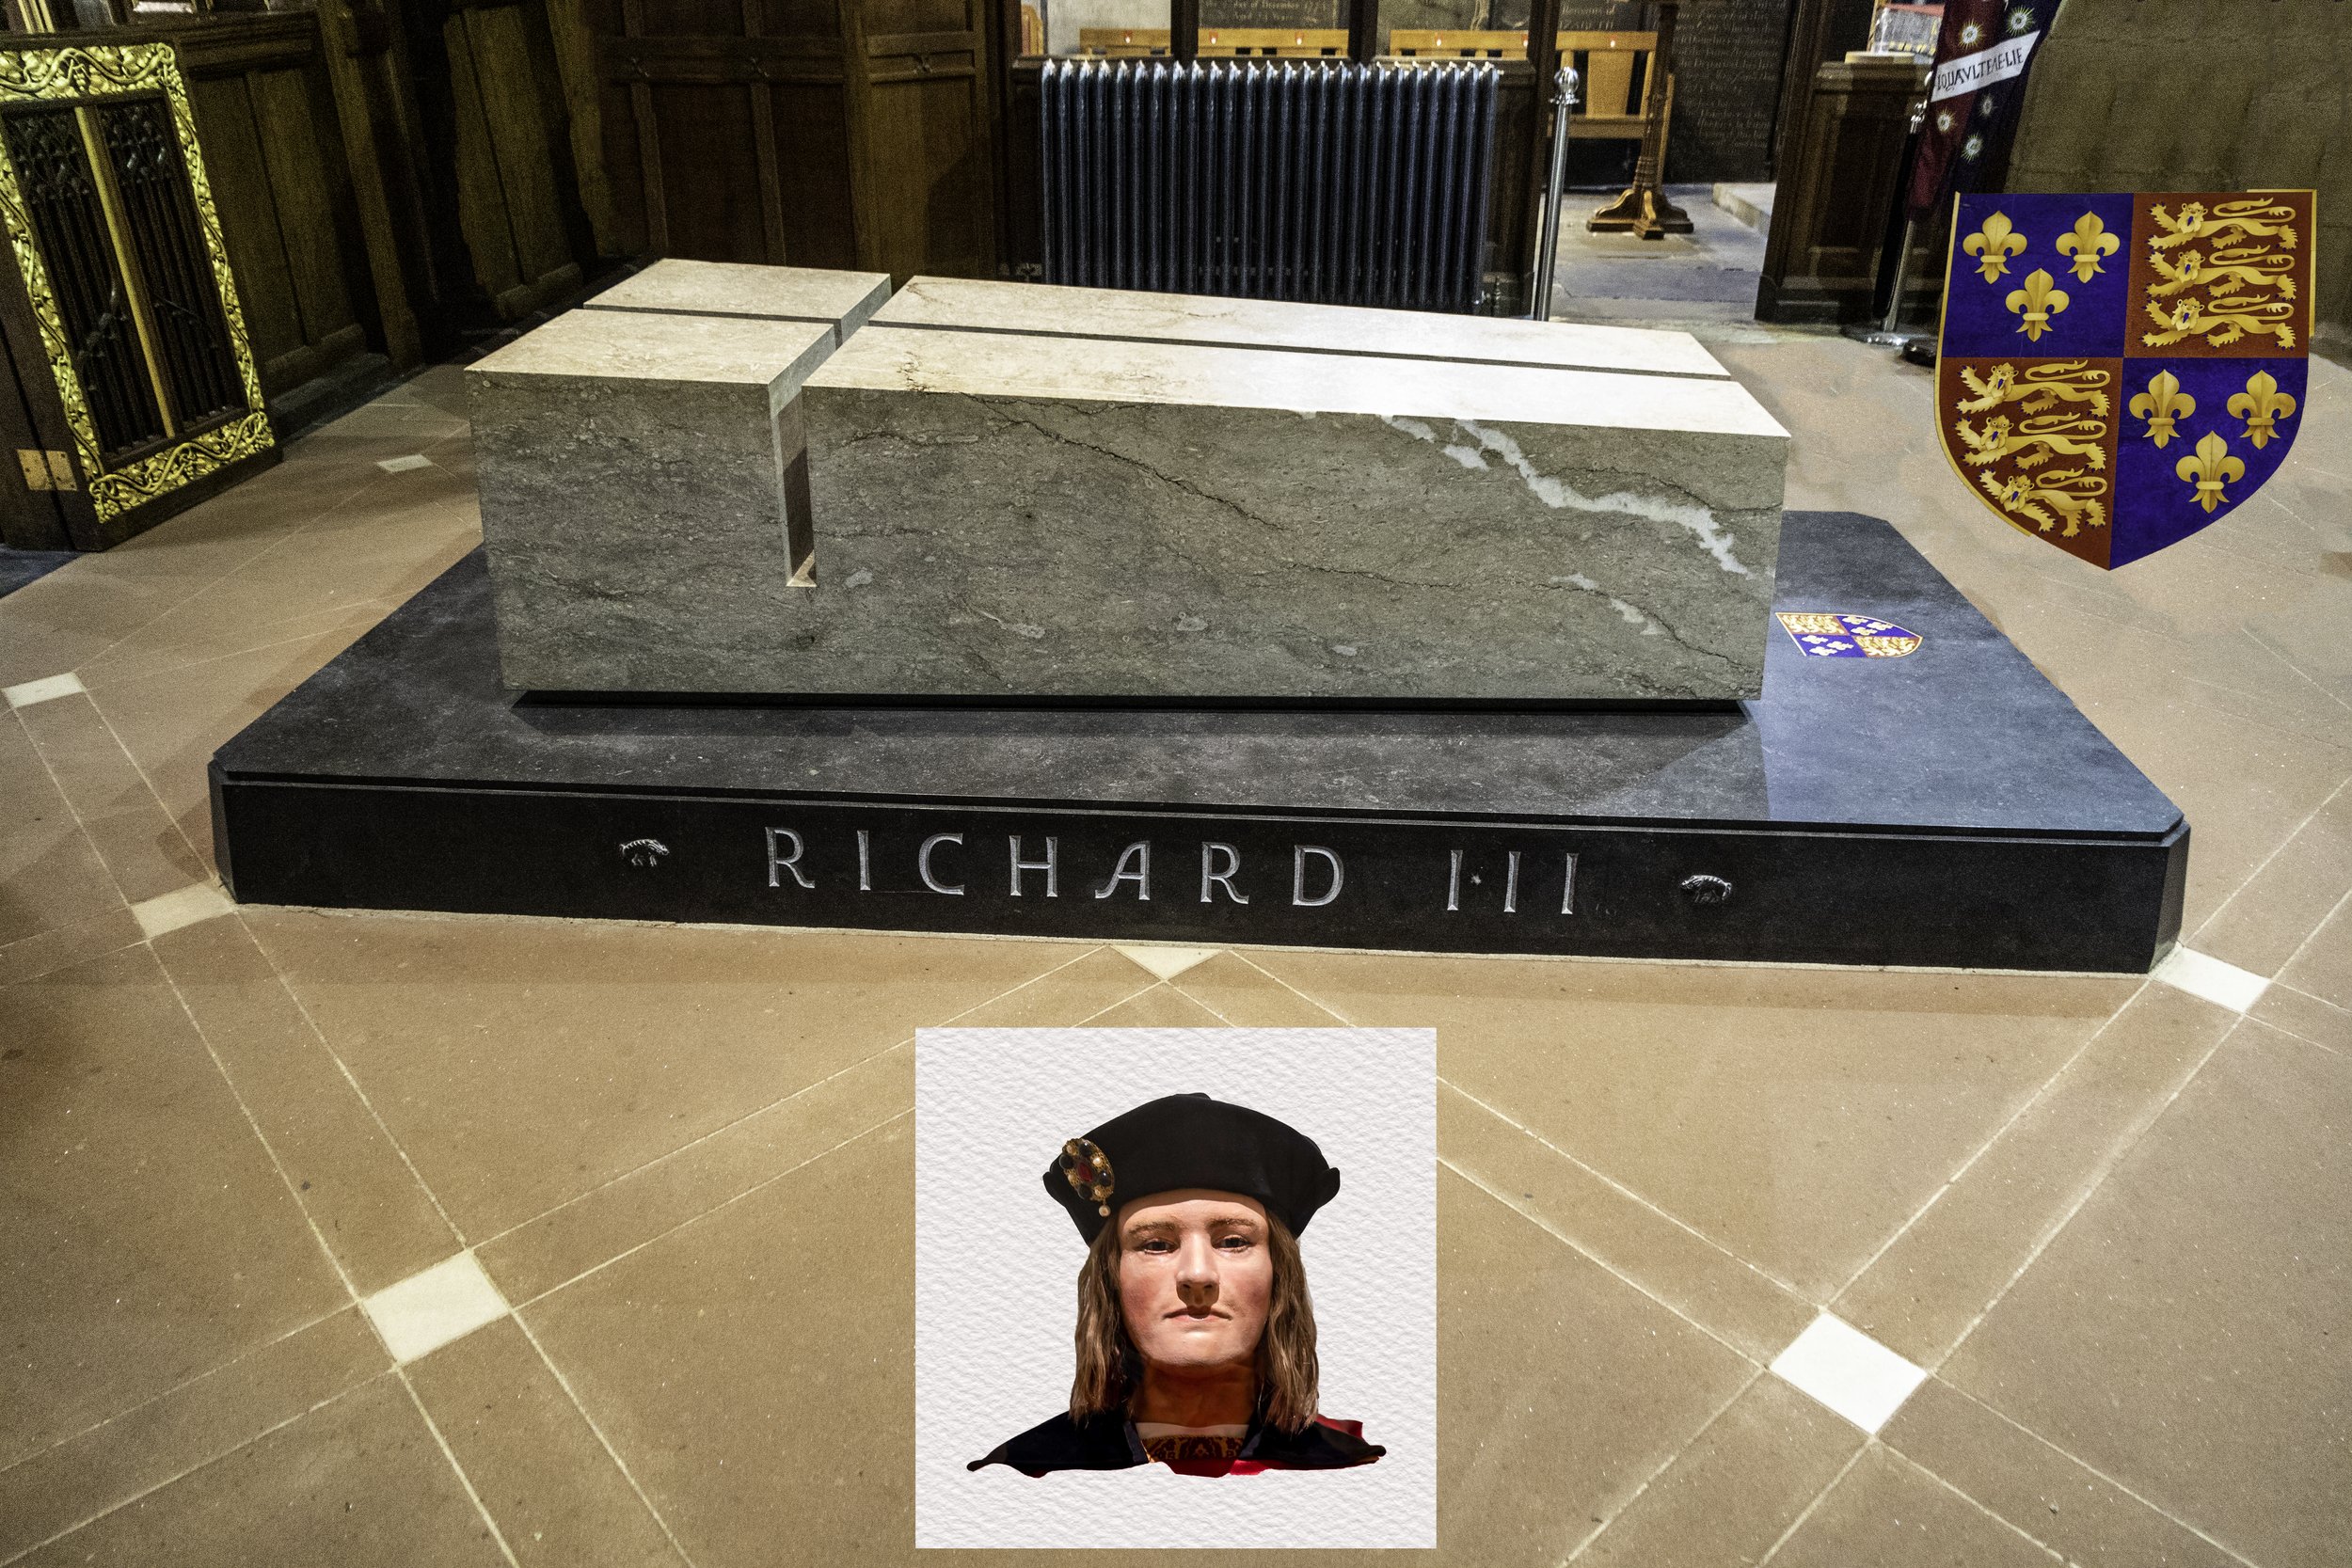 König Richard III drei Bestellungen Service 2015 in Leicester Cathedral